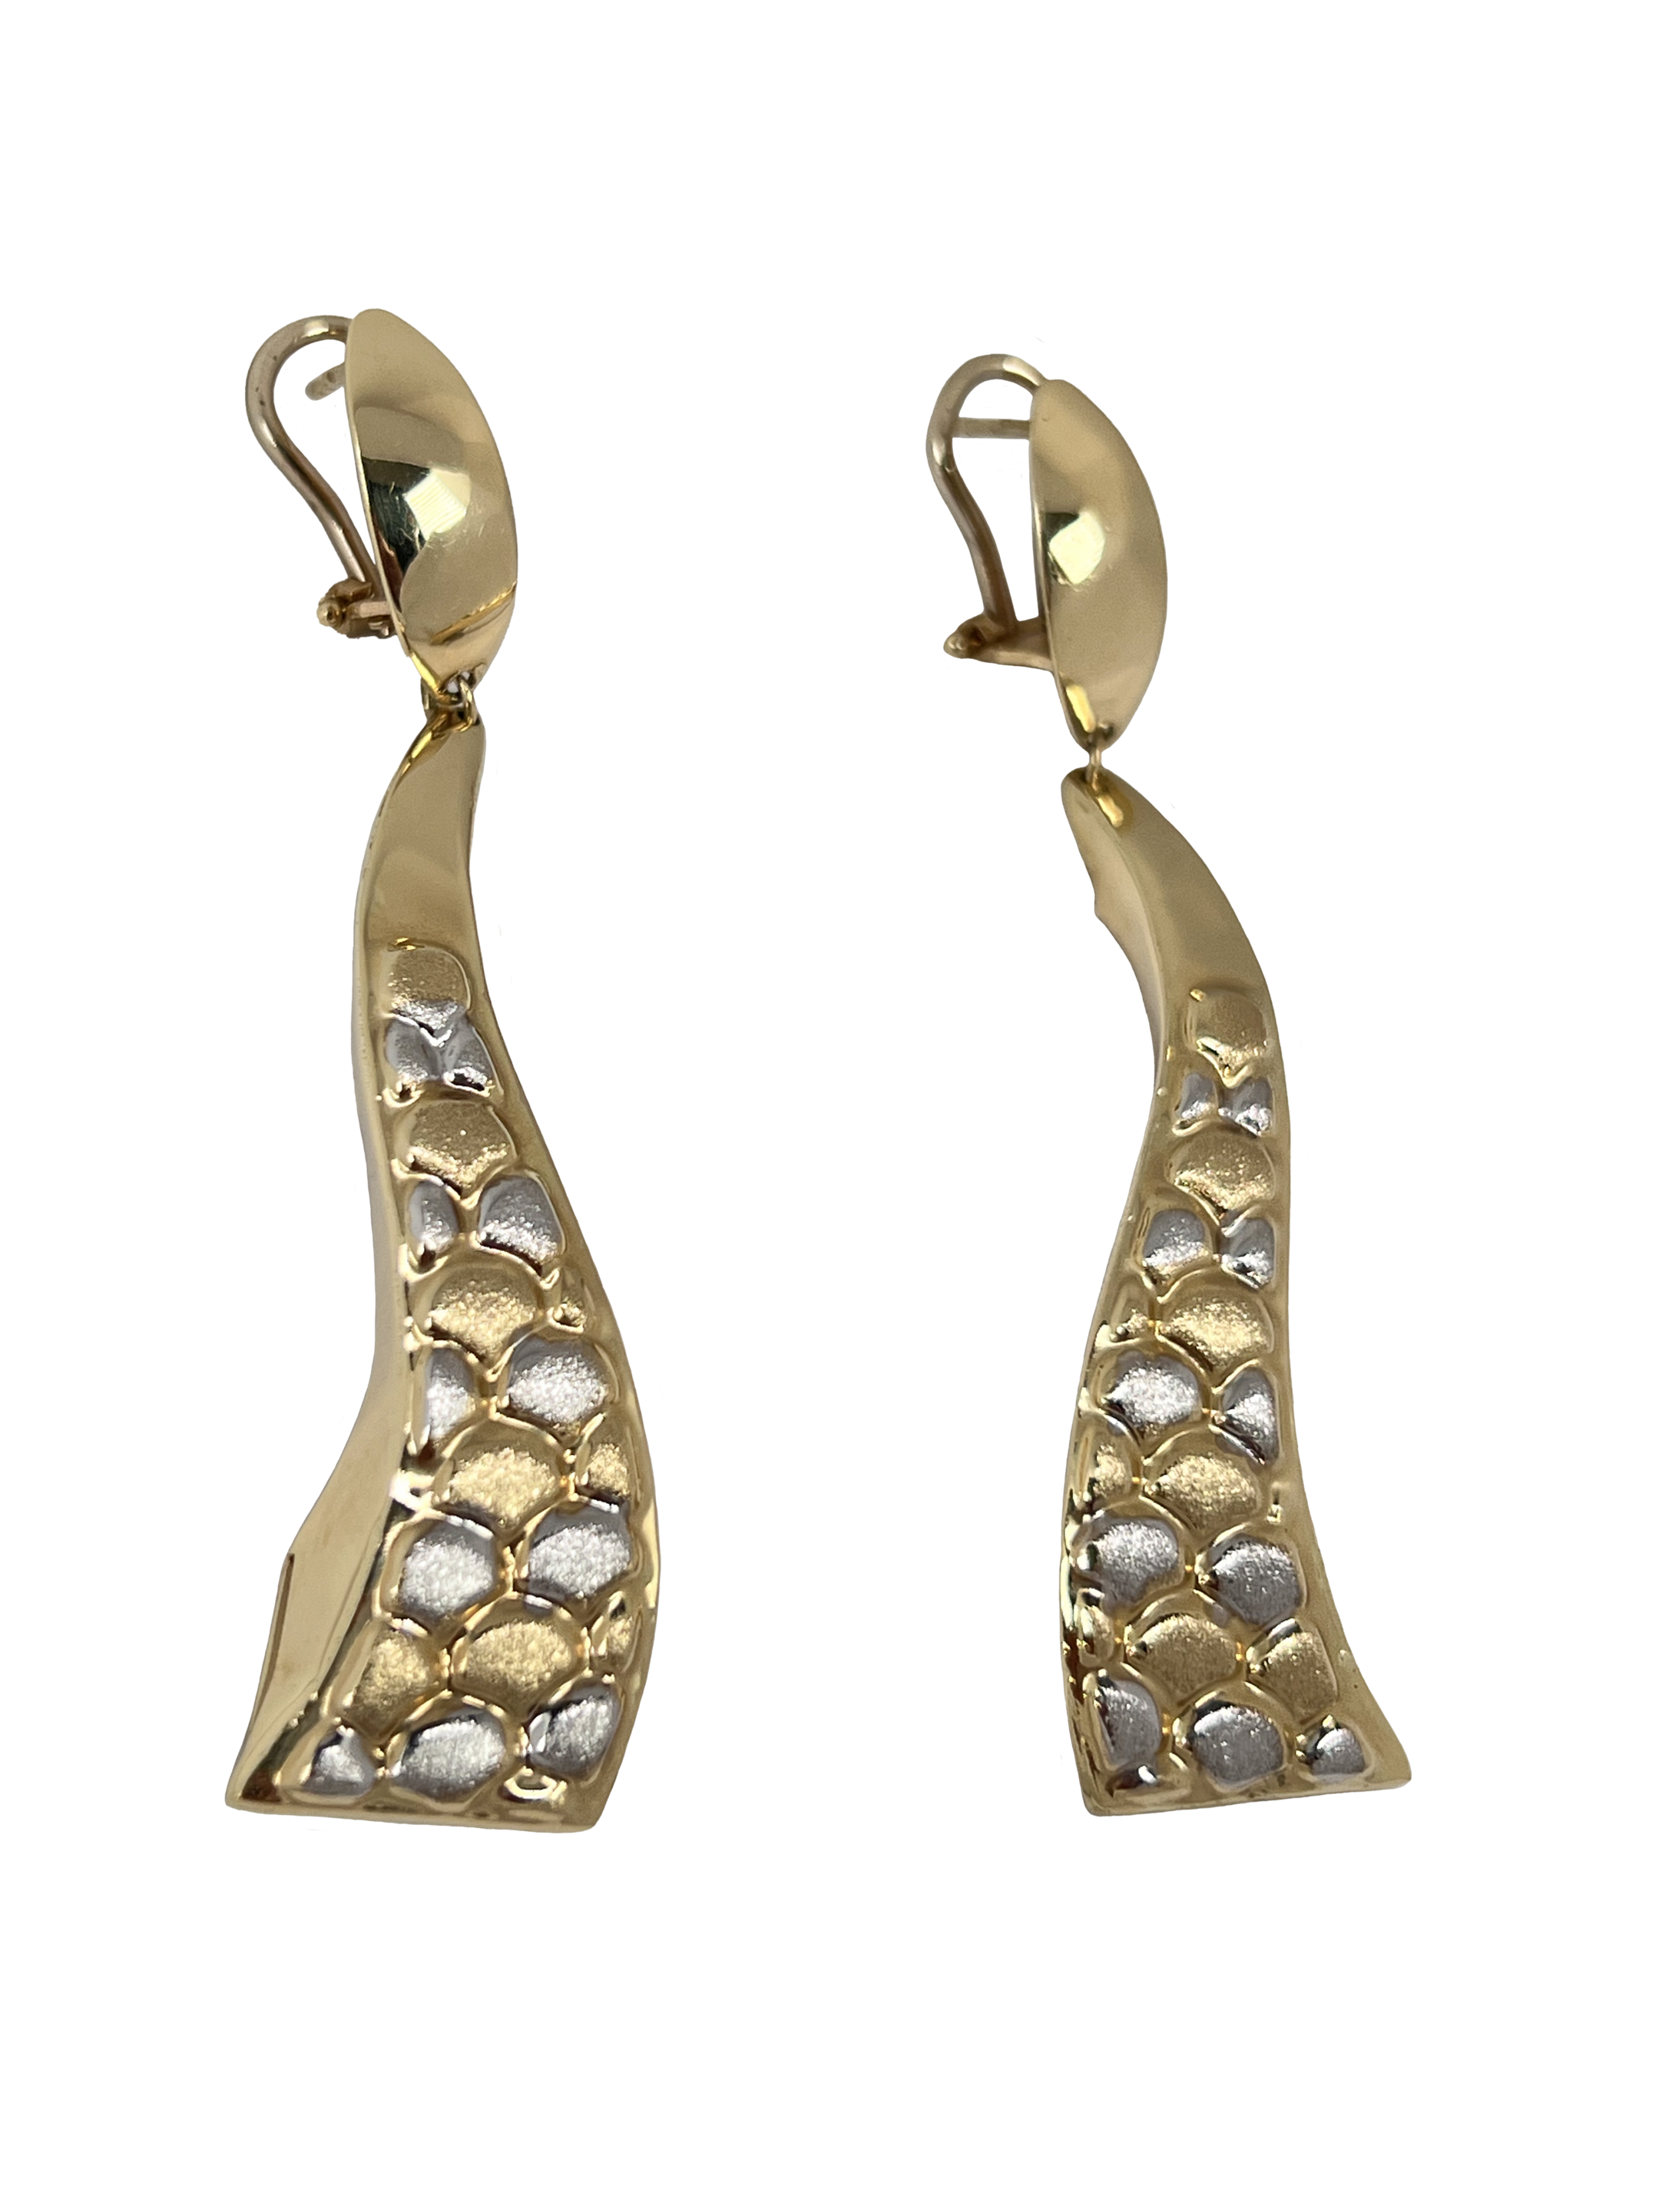 Zlati kombinirani uhani z vzorci in peskanjem